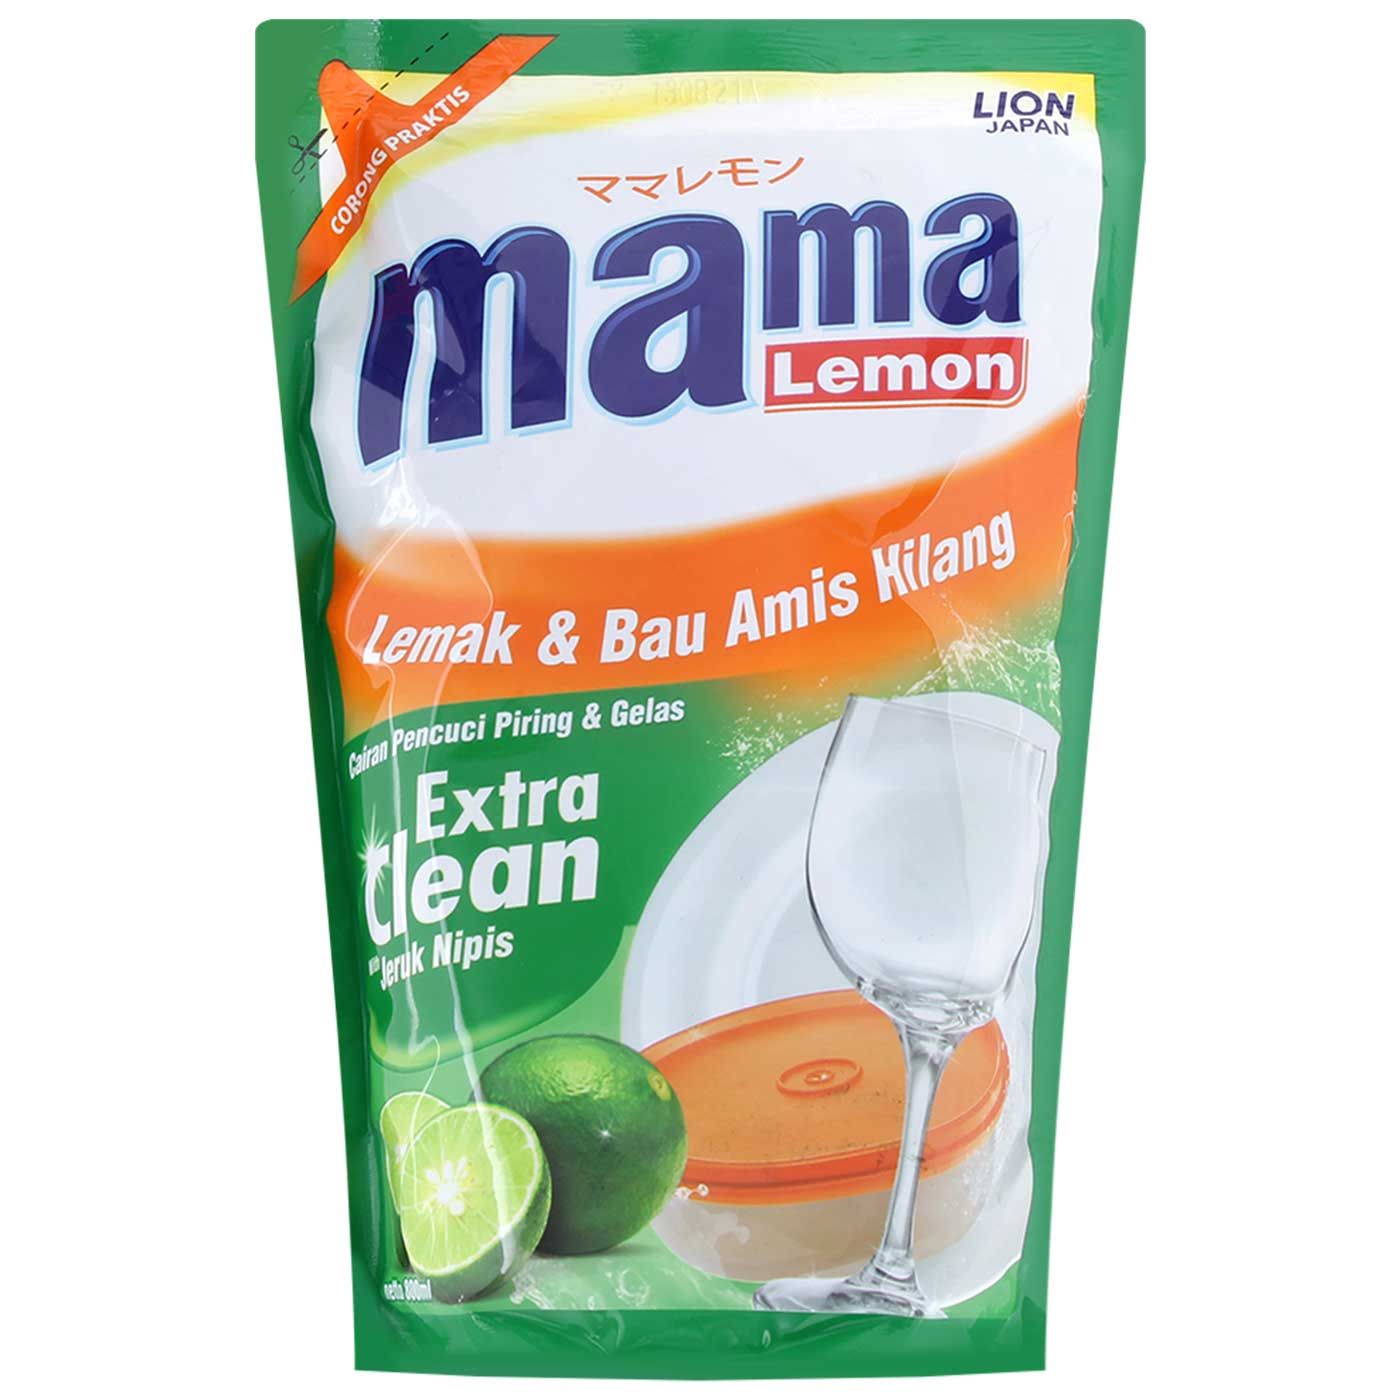 Mama Lemon